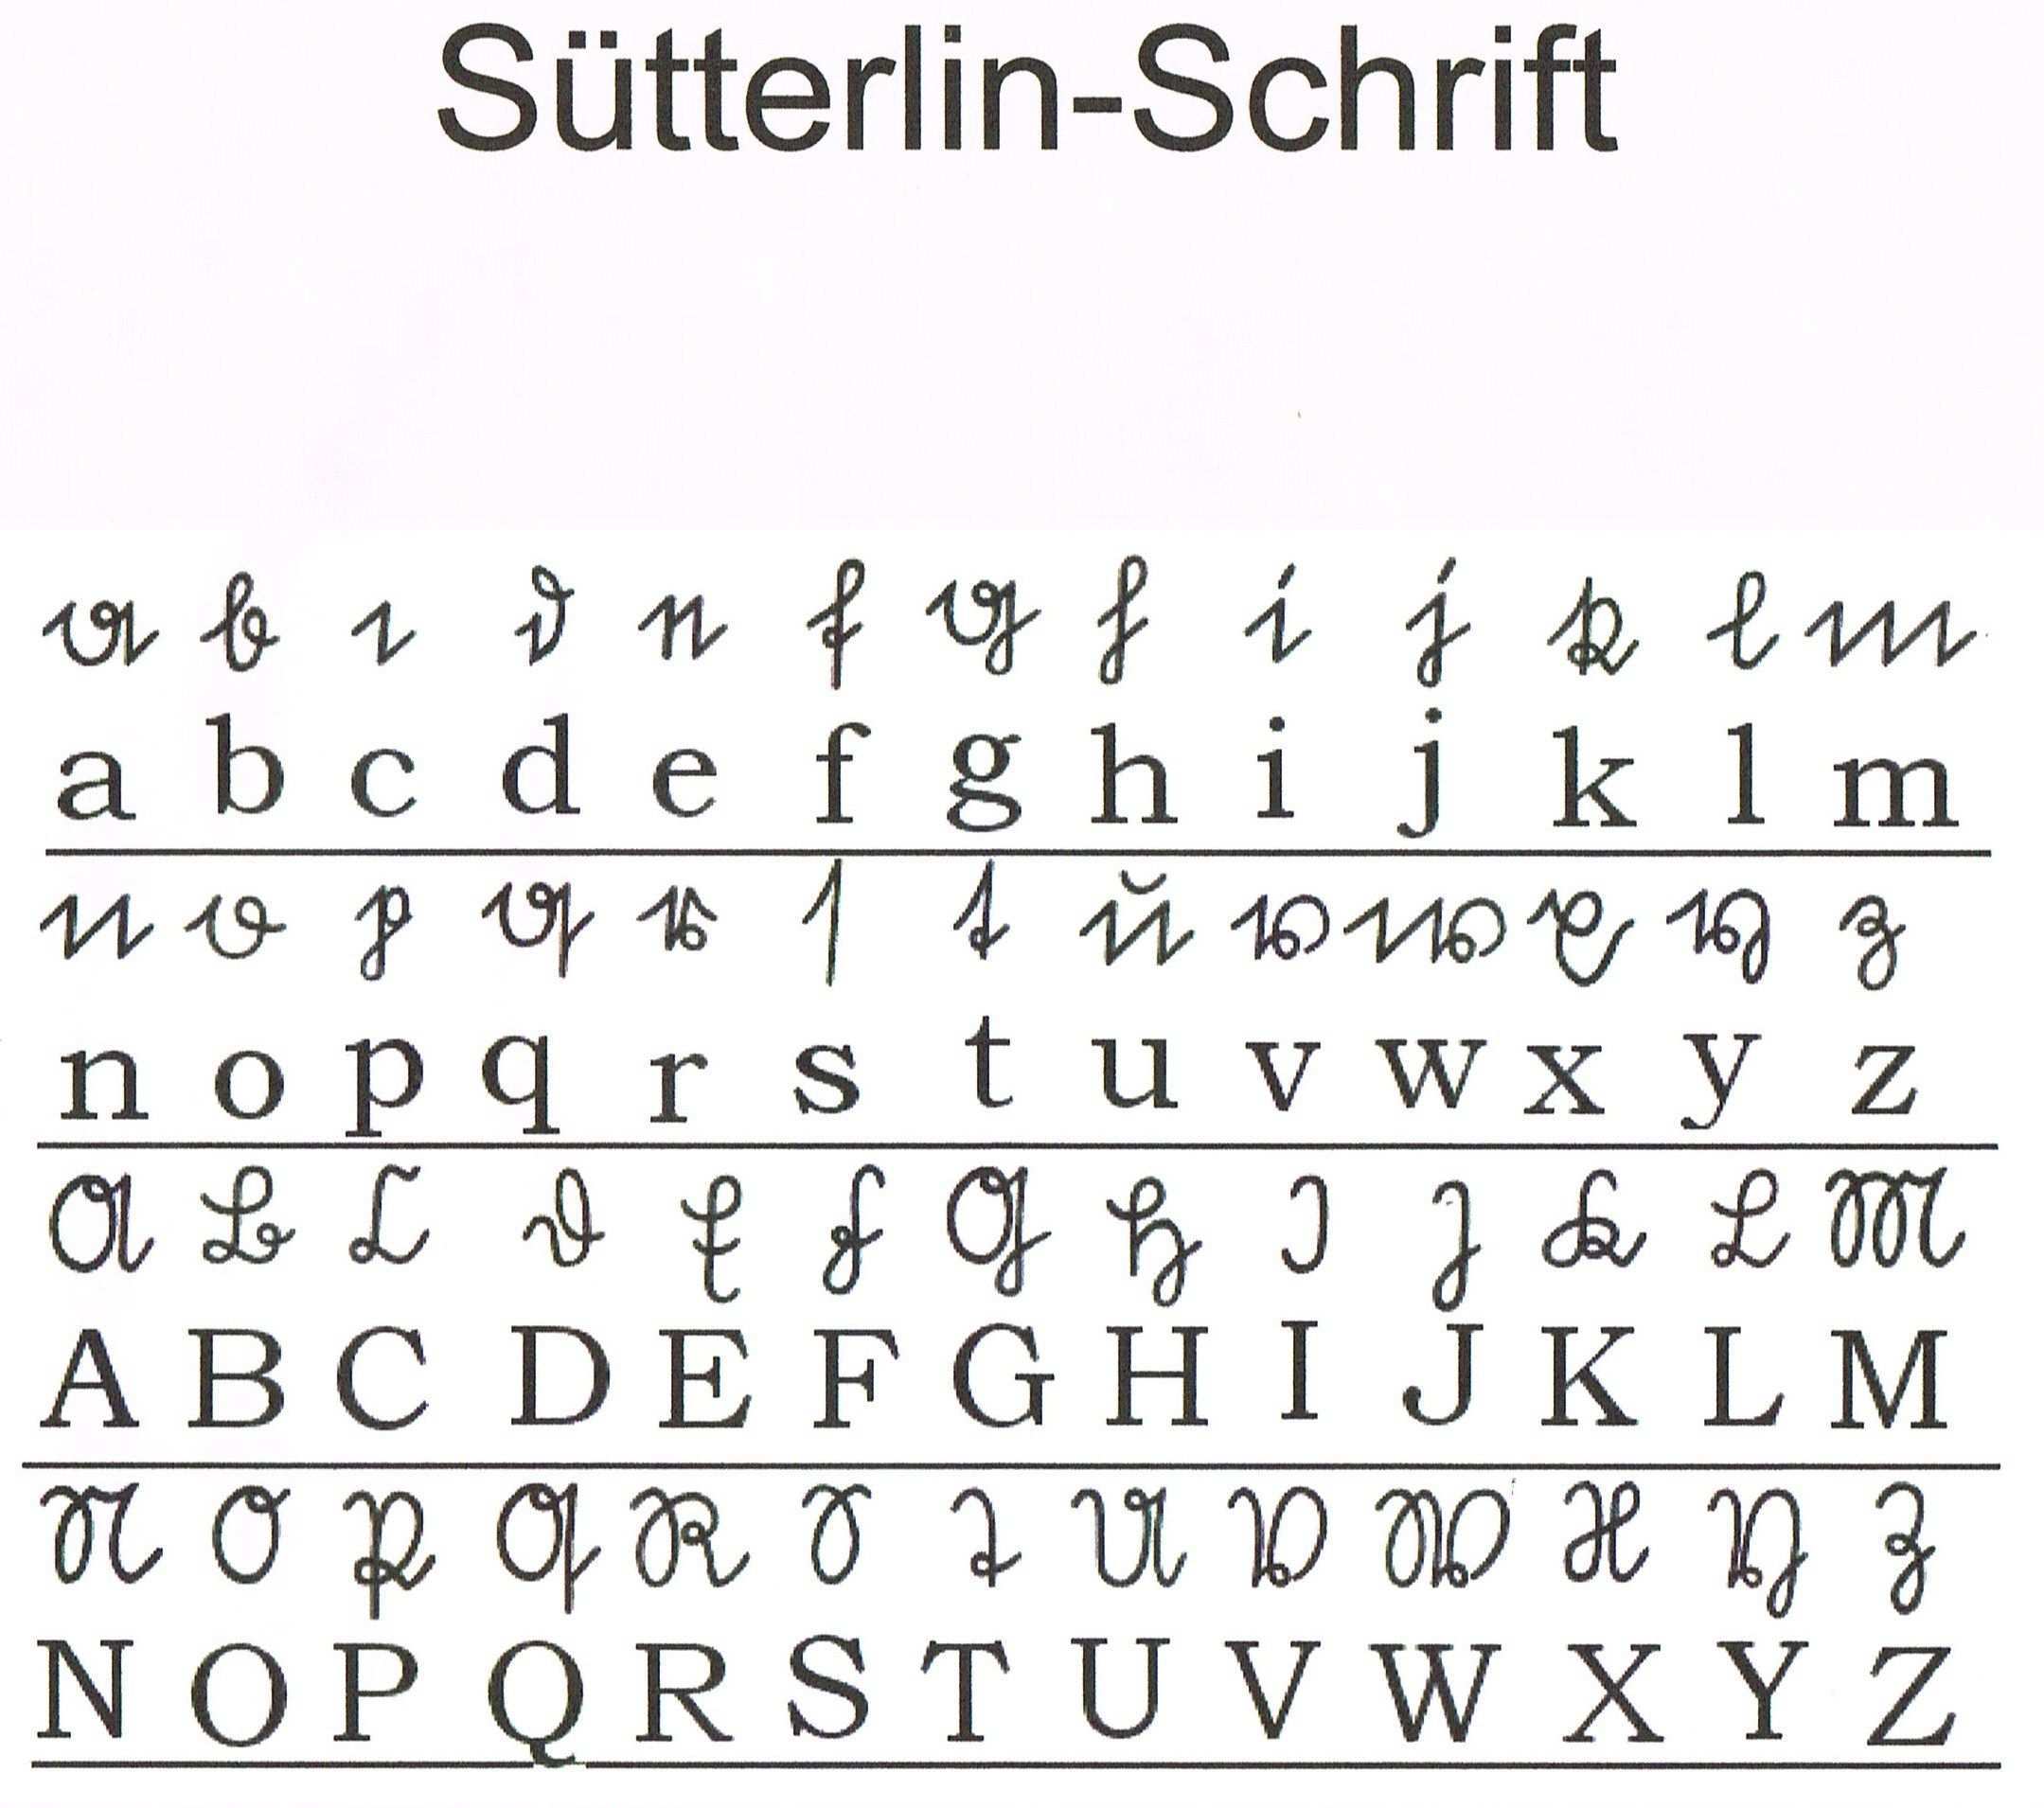 Sutterlin Schrift Jpg 2159 1910 Alte Deutsche Schrift Deutsche Schrift Sutterlin Alphabet